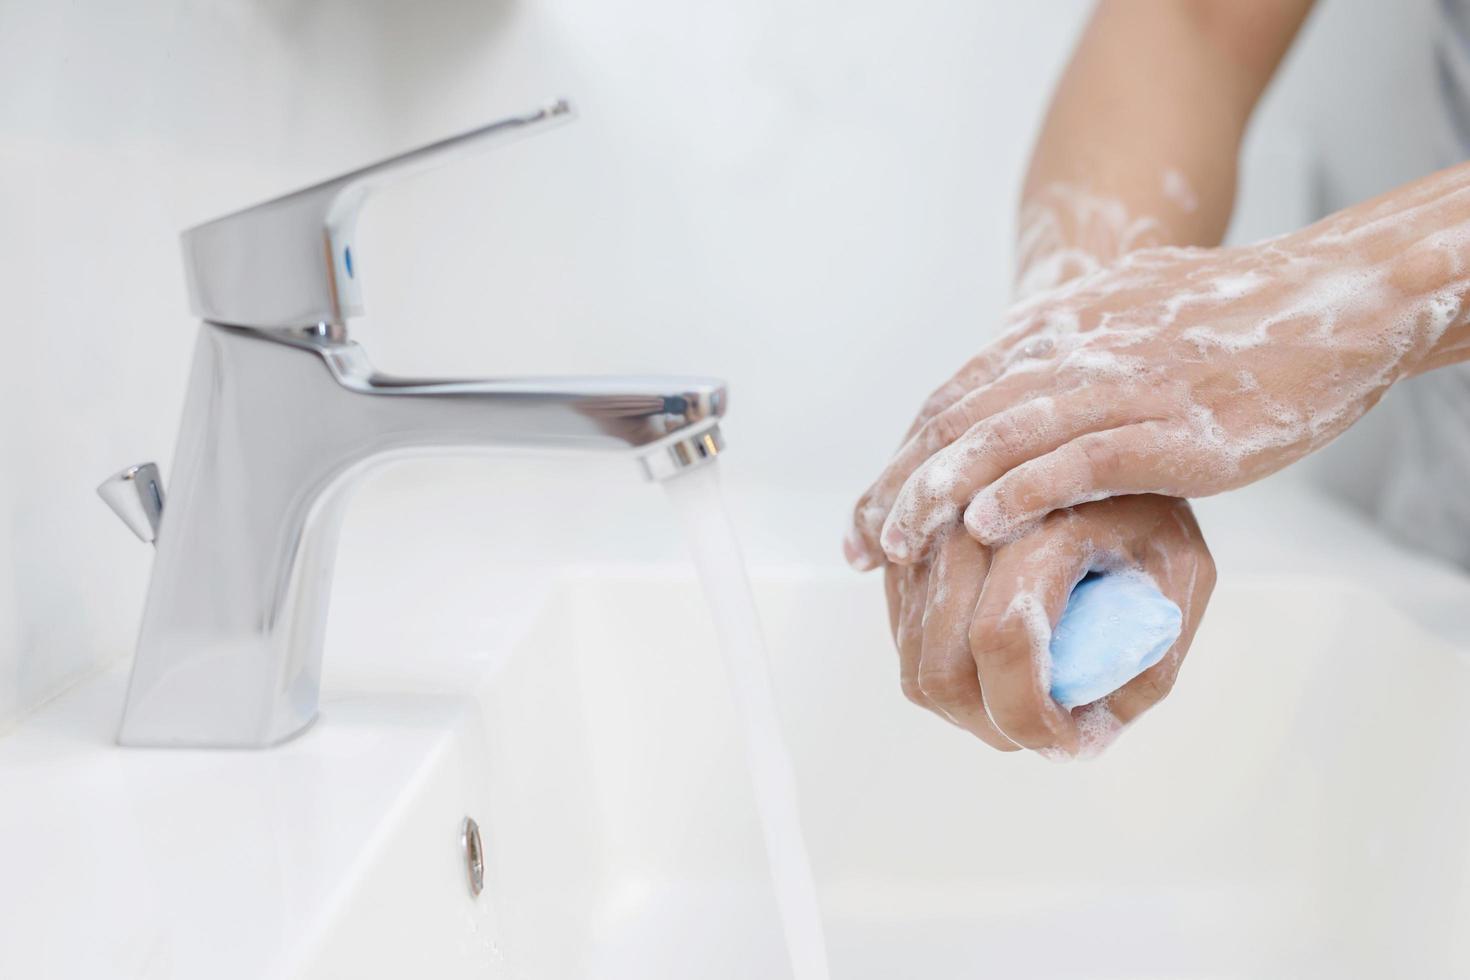 hygien. rengöring händer. tvättning händer med tvål under de kran med vatten betala smuts. foto